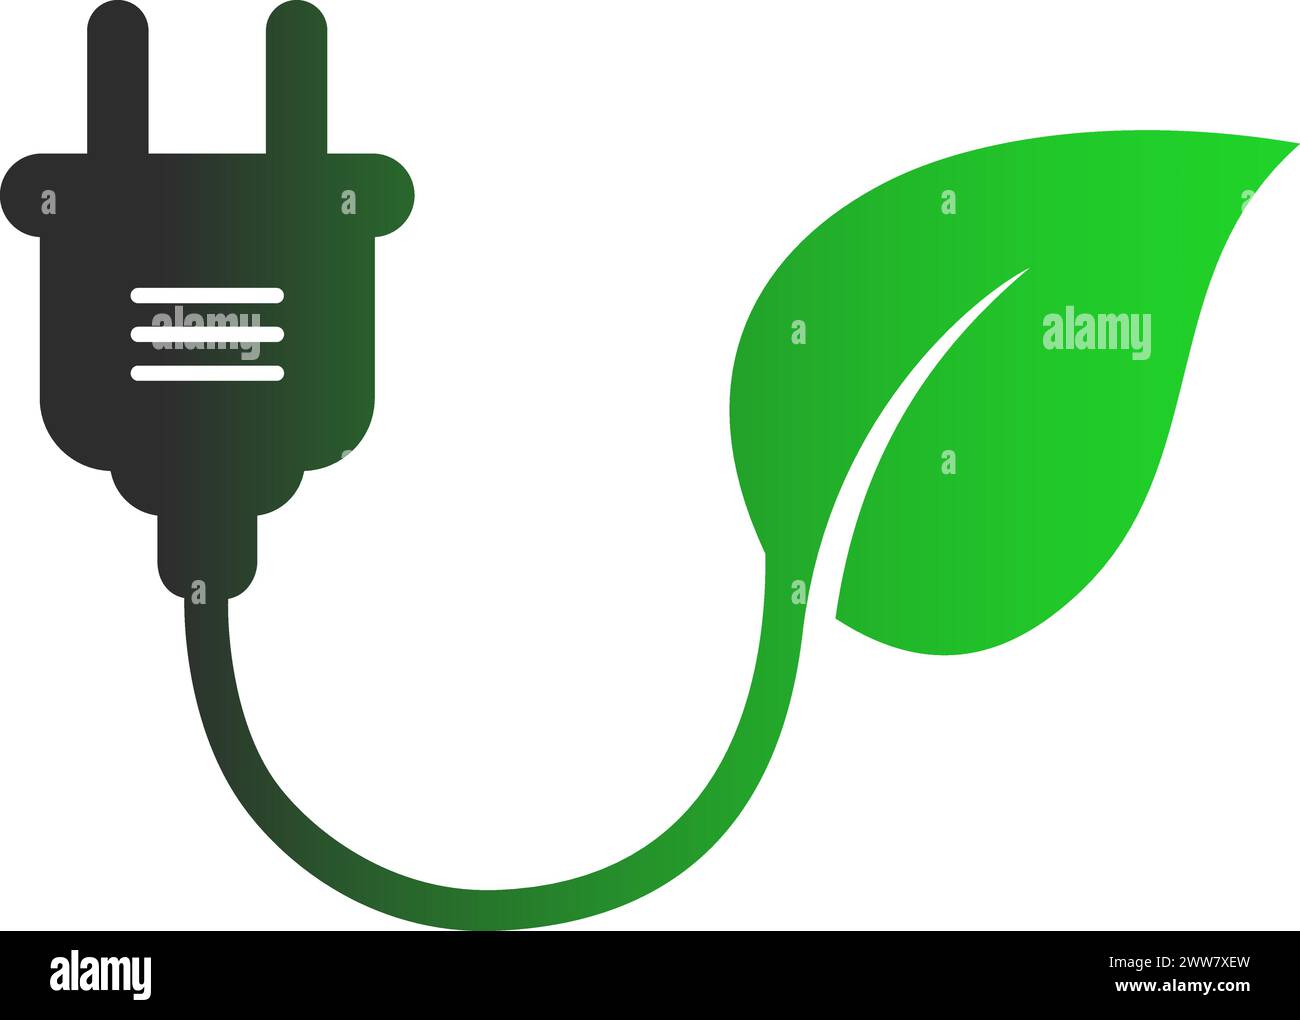 Green Energy Icon als Netzstecker mit Blatt als innovatives Energiekonzept für erneuerbare Energien Stock Vektor